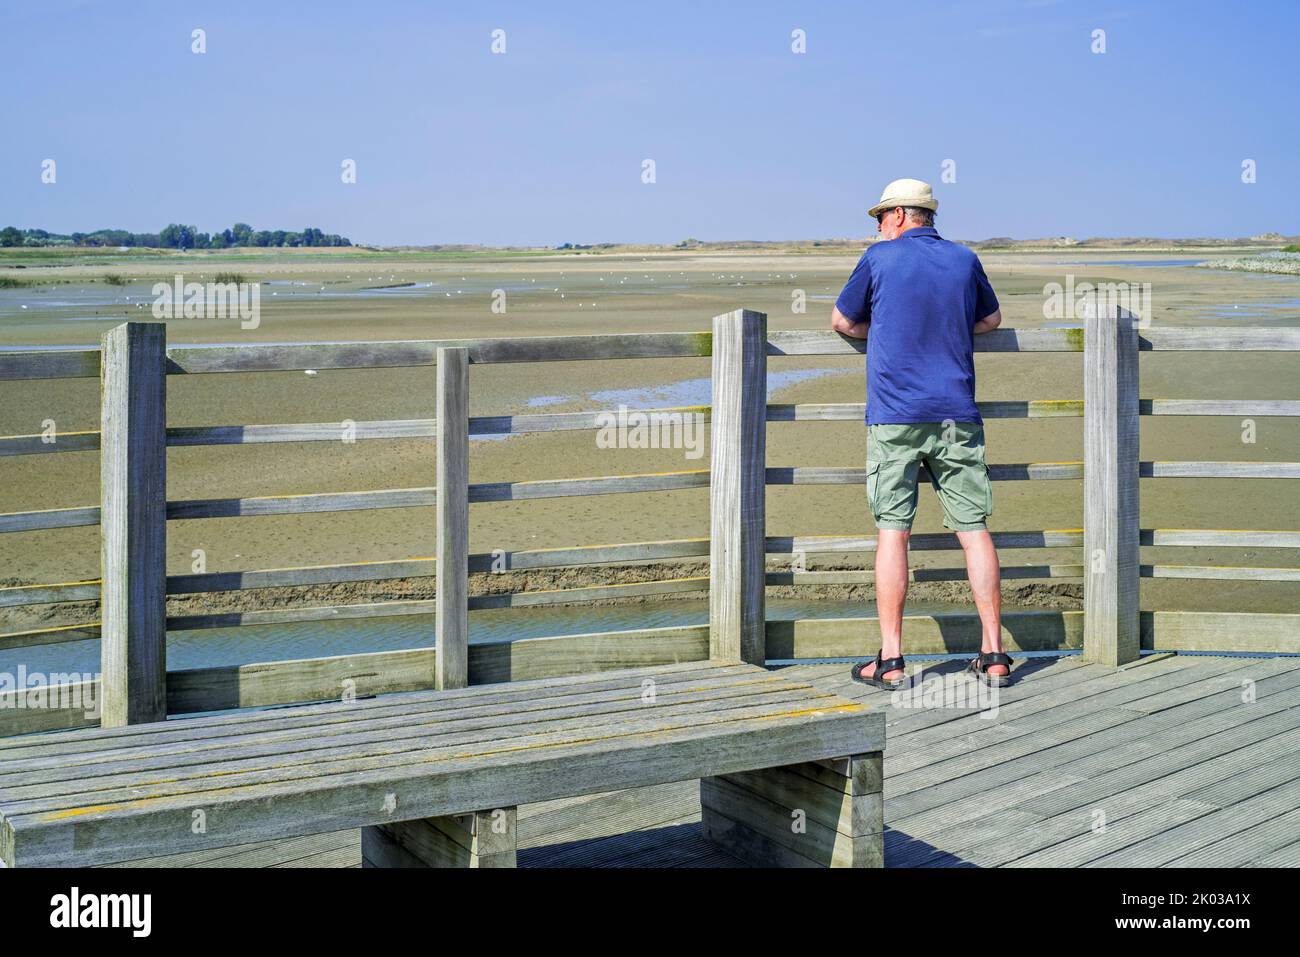 Touriste âgé / marcheur sur une plate-forme de belvédère en bois, point de vue offrant une vue sur le saltmarsh et les oiseaux côtiers à la réserve naturelle de Zwin, Belgique Banque D'Images